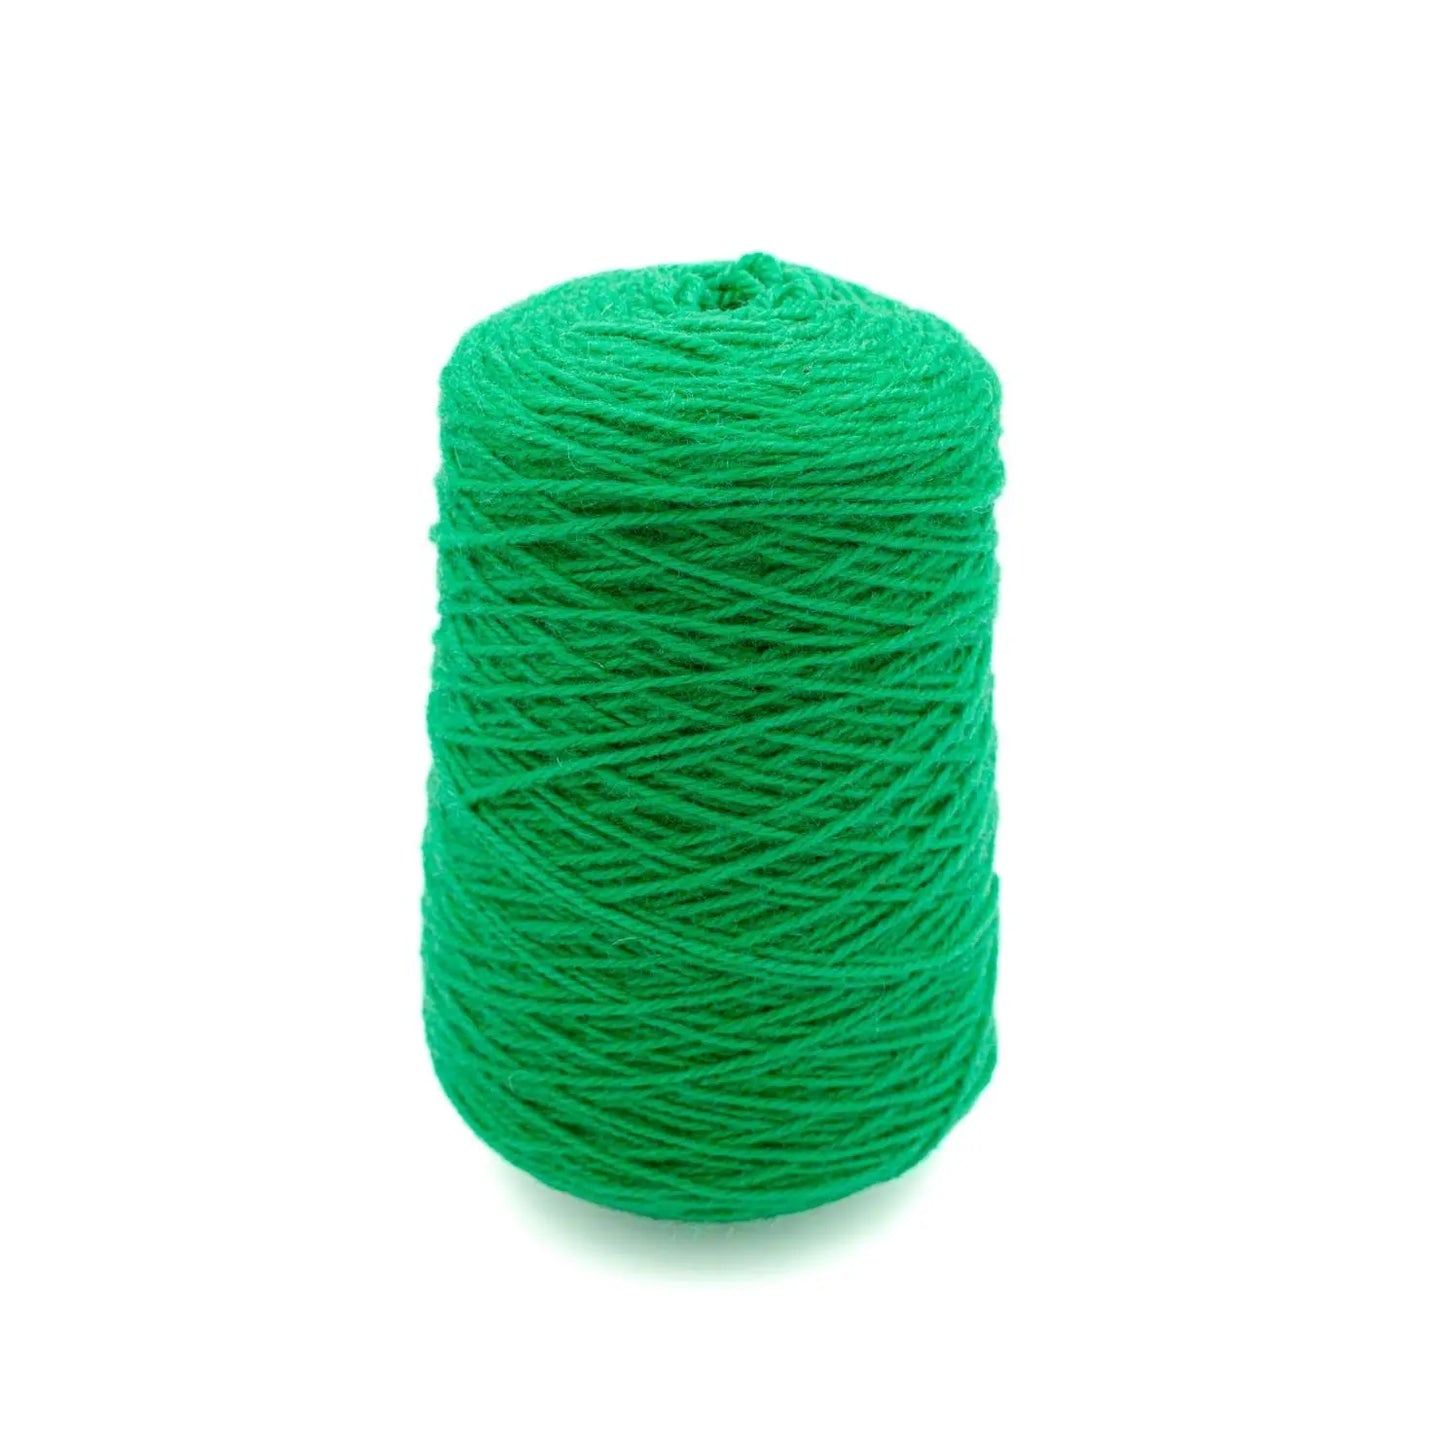 Crayola Green Wool Yarn